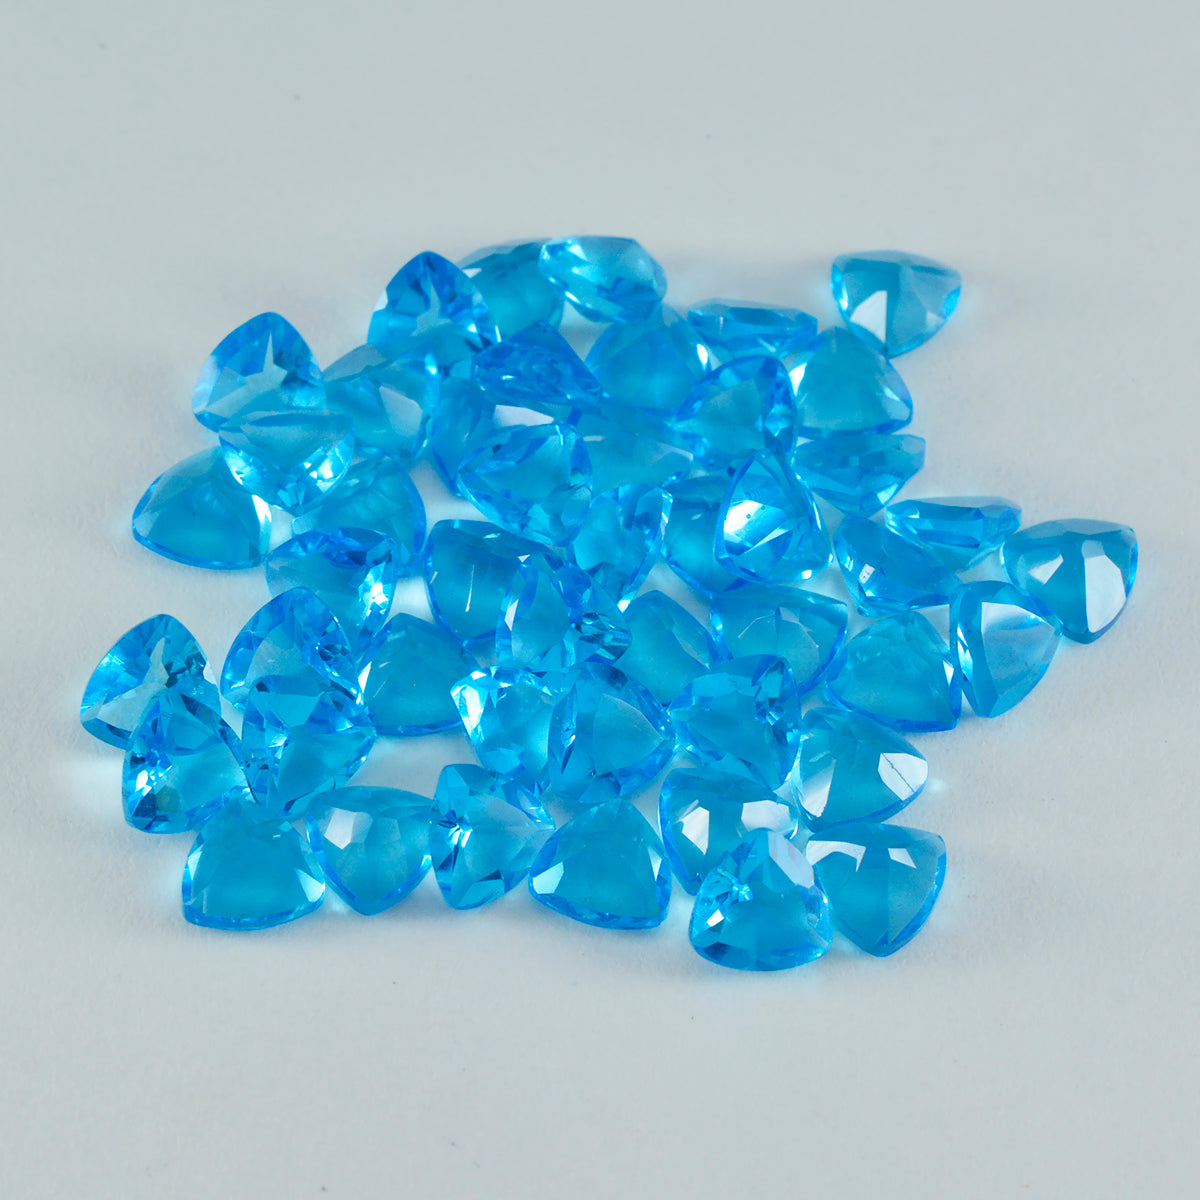 riyogems 1 шт. синий топаз cz ограненный 8x8 мм форма триллиона сладкий качественный свободный драгоценный камень